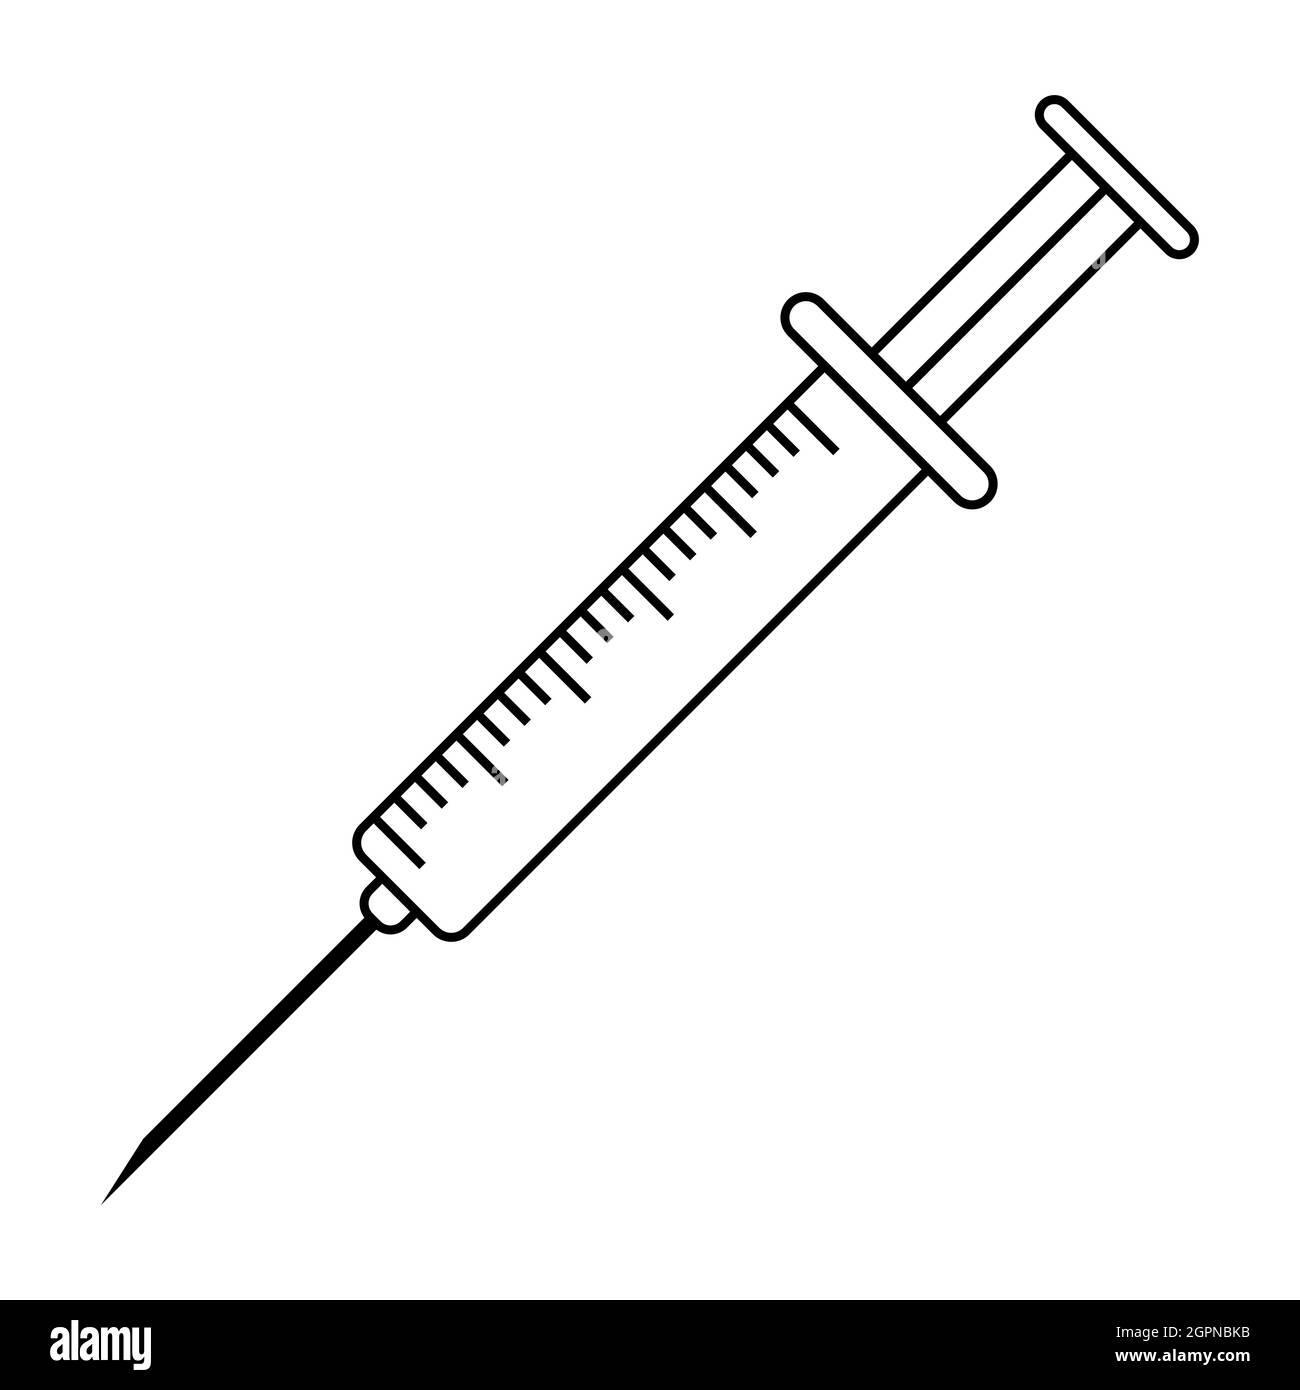 Medizinische Spritze für Impfstoffinjektion Vektor medizinische Einweg-Spritze mit Nadel Stock Vektor